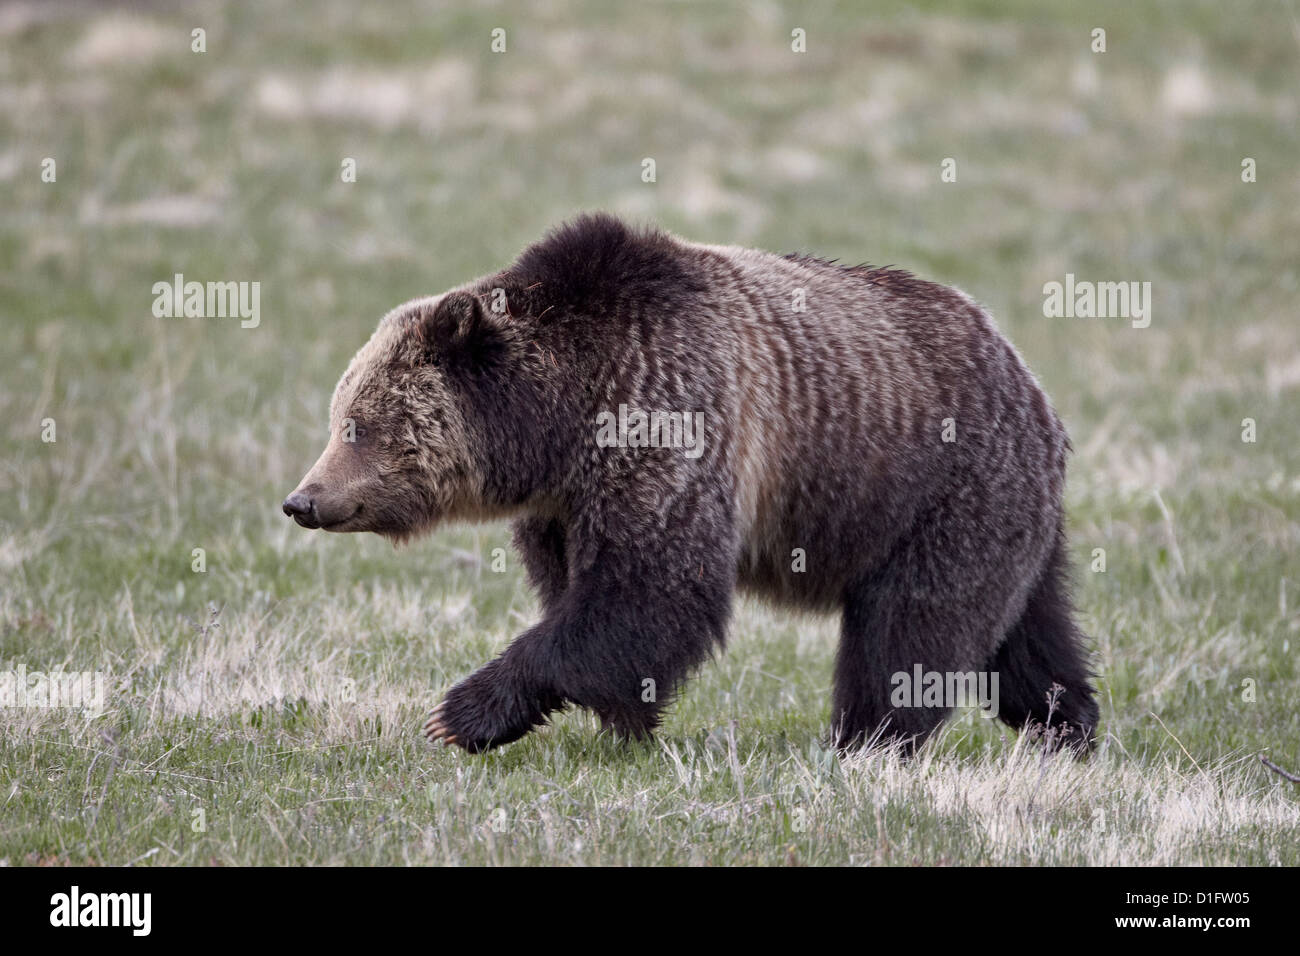 Ours grizzli (Ursus arctos horribilis) randonnée pédestre, le Parc National de Yellowstone, Wyoming, États-Unis d'Amérique, Amérique du Nord Banque D'Images